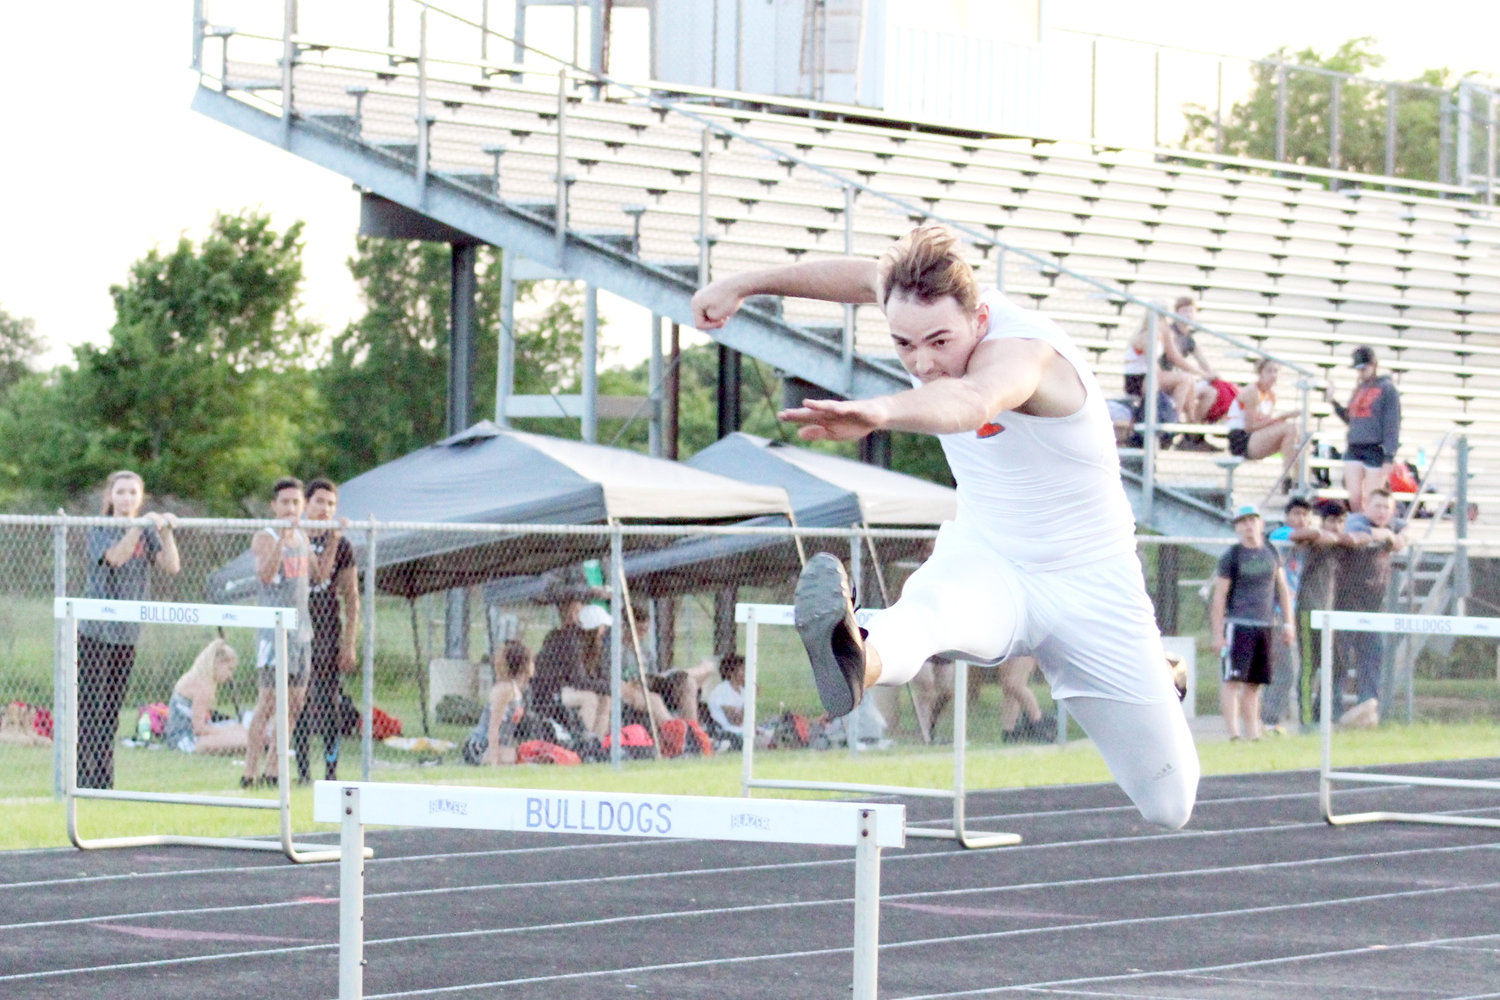 Devon Goguen leaps over the hurdle in the 300M hurdles event. (Monitor photo by Briana Harmon)